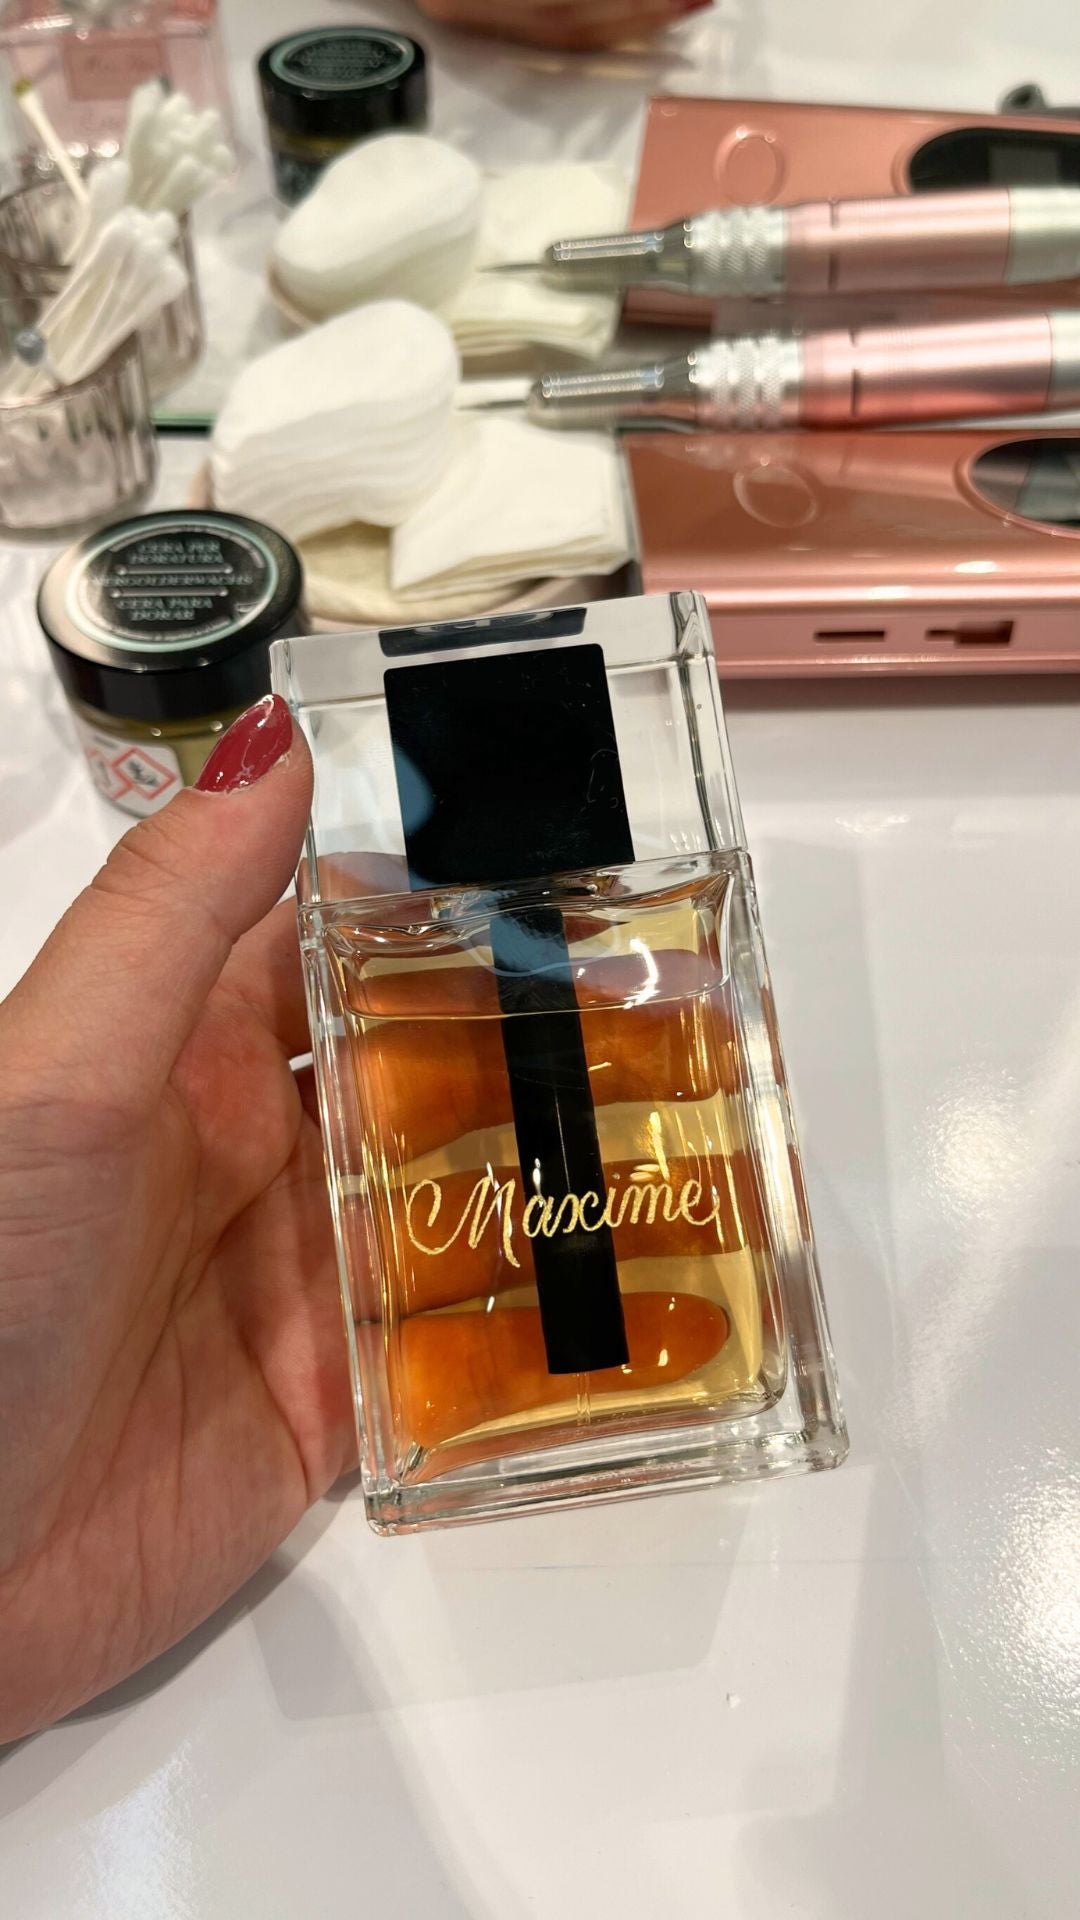 Photo d'un parfum pour homme avec le prénom "Maxime" gravé sur le flacon